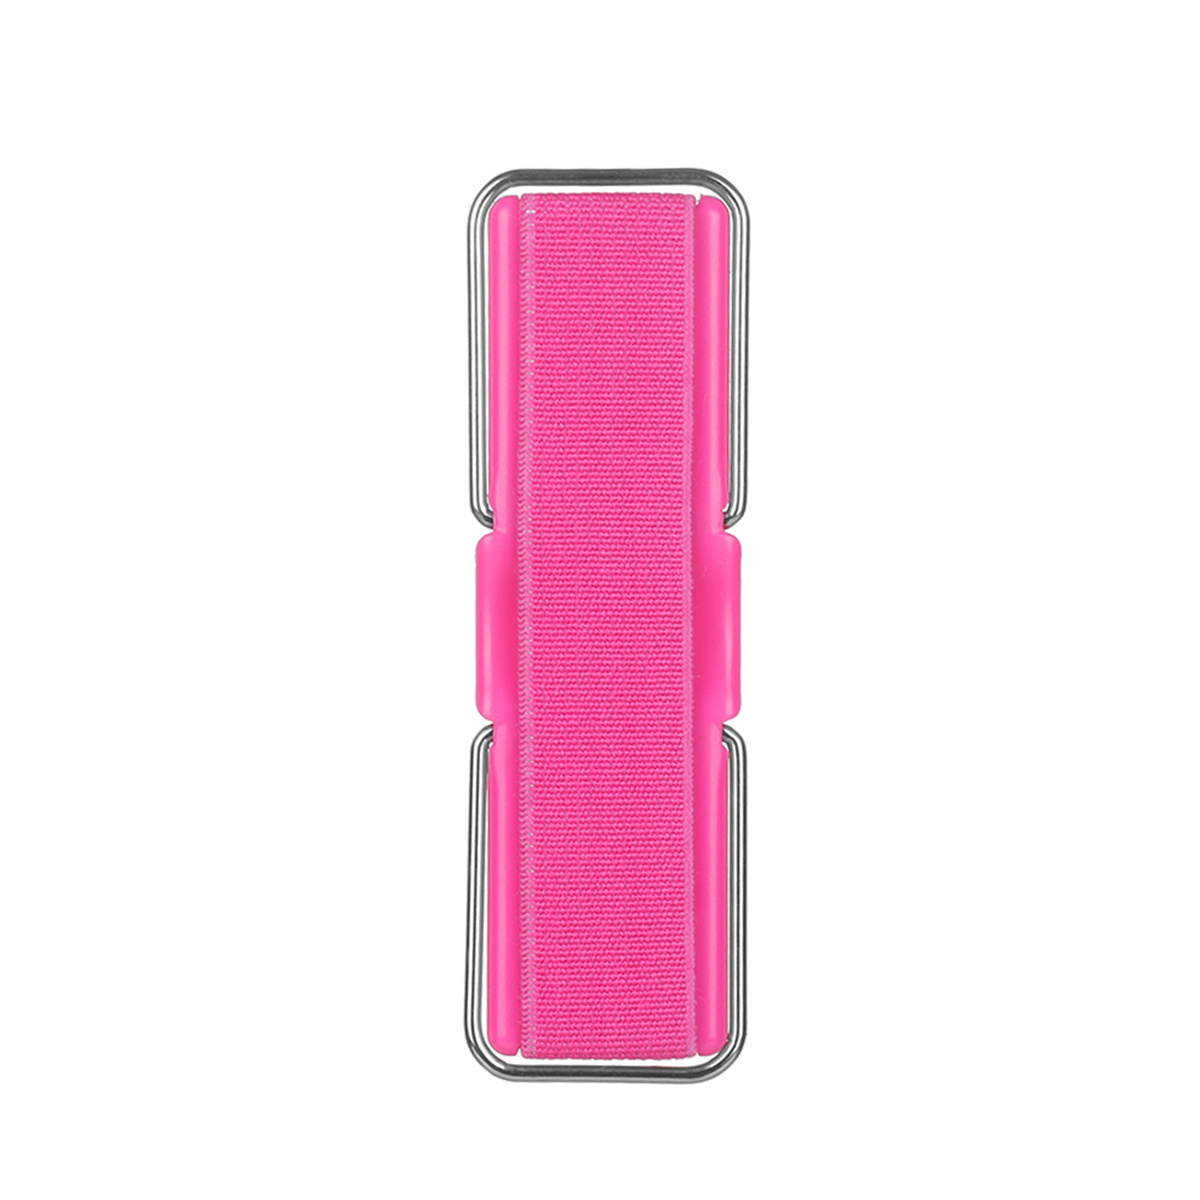 Spigen Flex Strap Cell Phone Grip/Universal Grip/Smartphone Holder Soft  Elastic Strap Holder Designed for All Smartphones and Tablets - Rose Gold